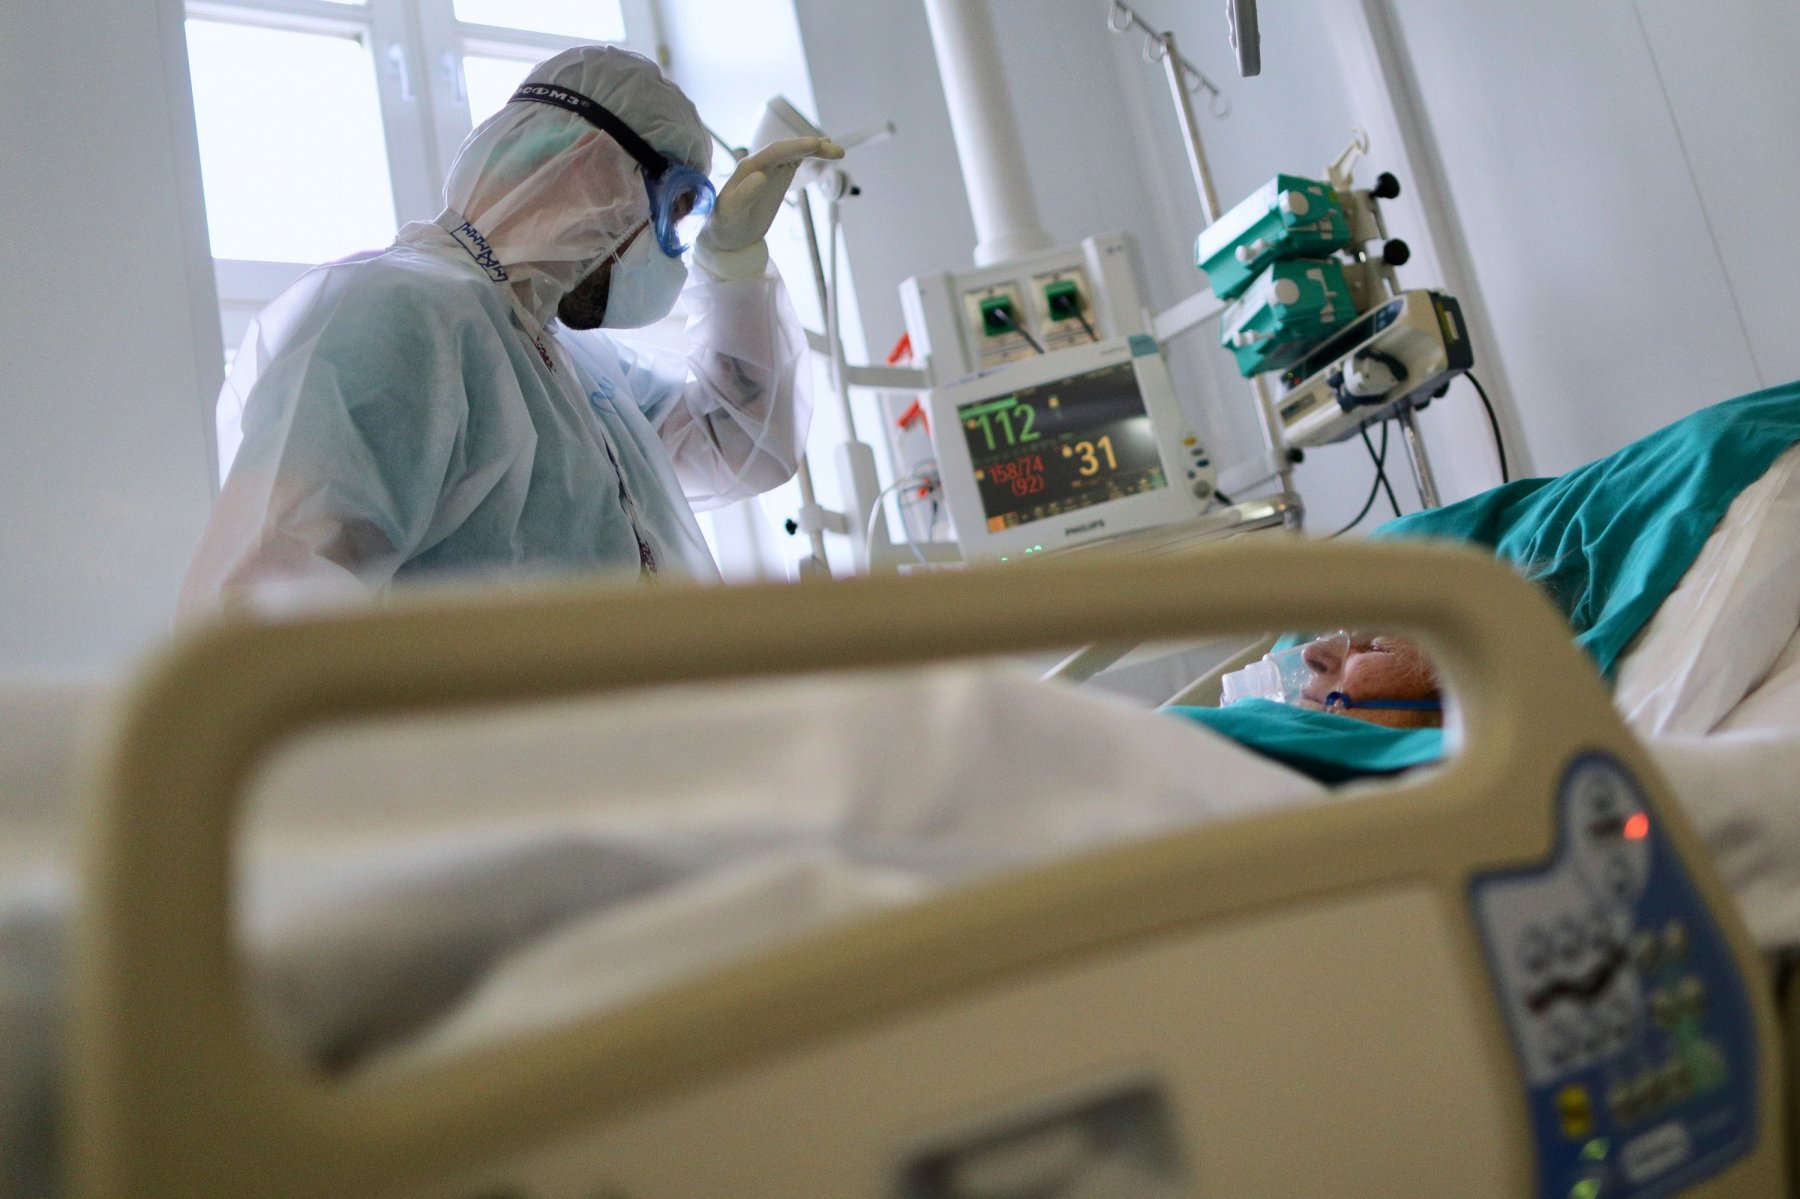 Оборудование для реабилитации после инфарктов и инсультов поставят в больницы Подмосковья